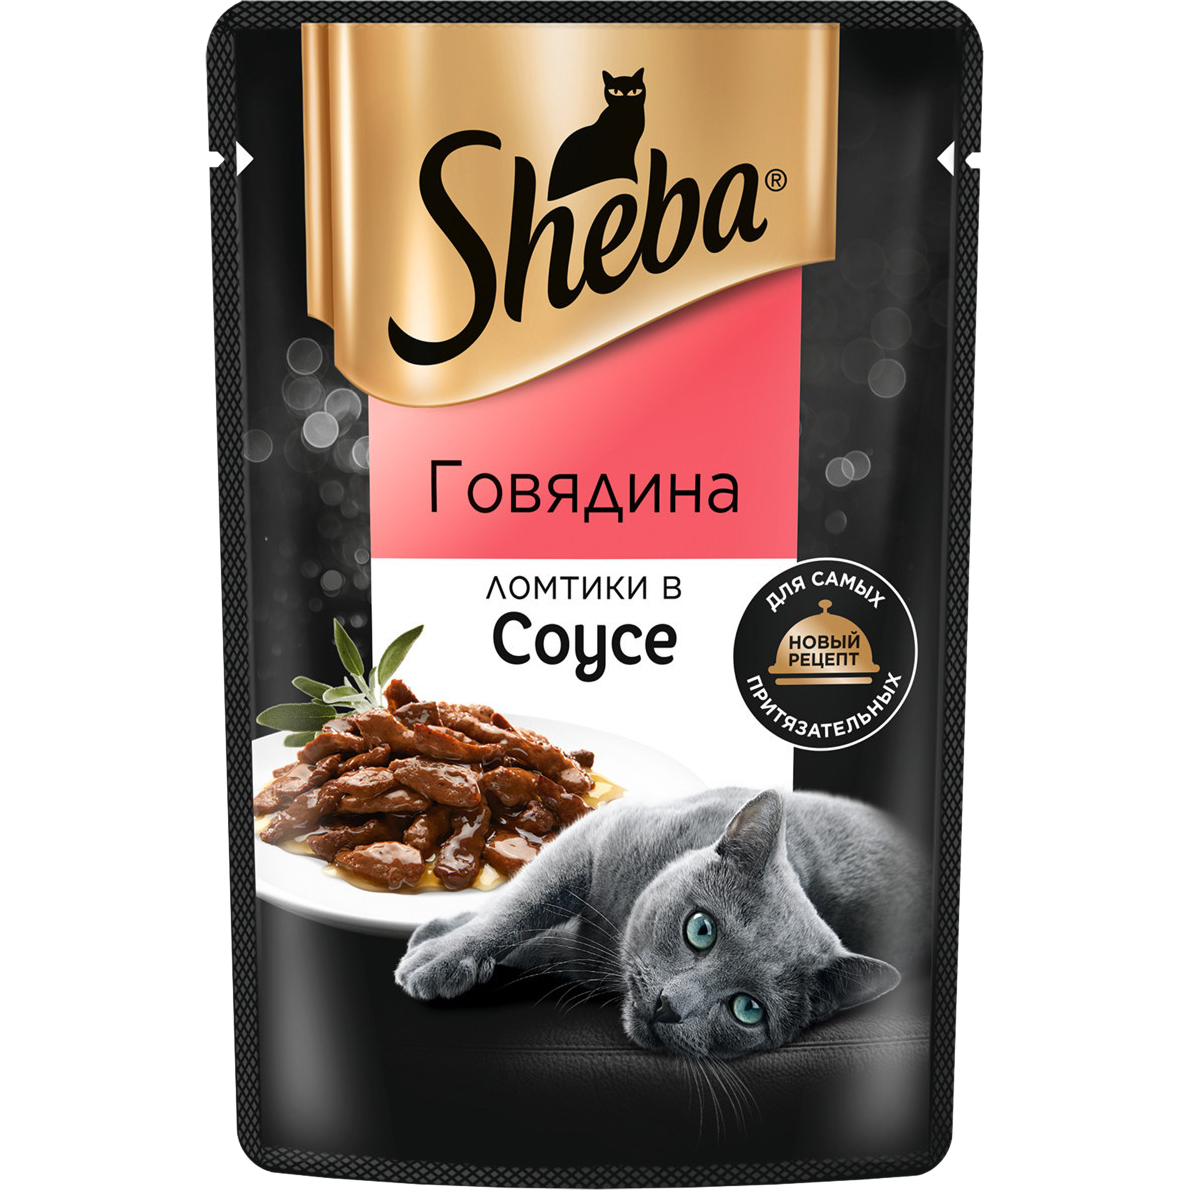 фото Корм для кошек sheba говядина ломтики в соусе 75 г